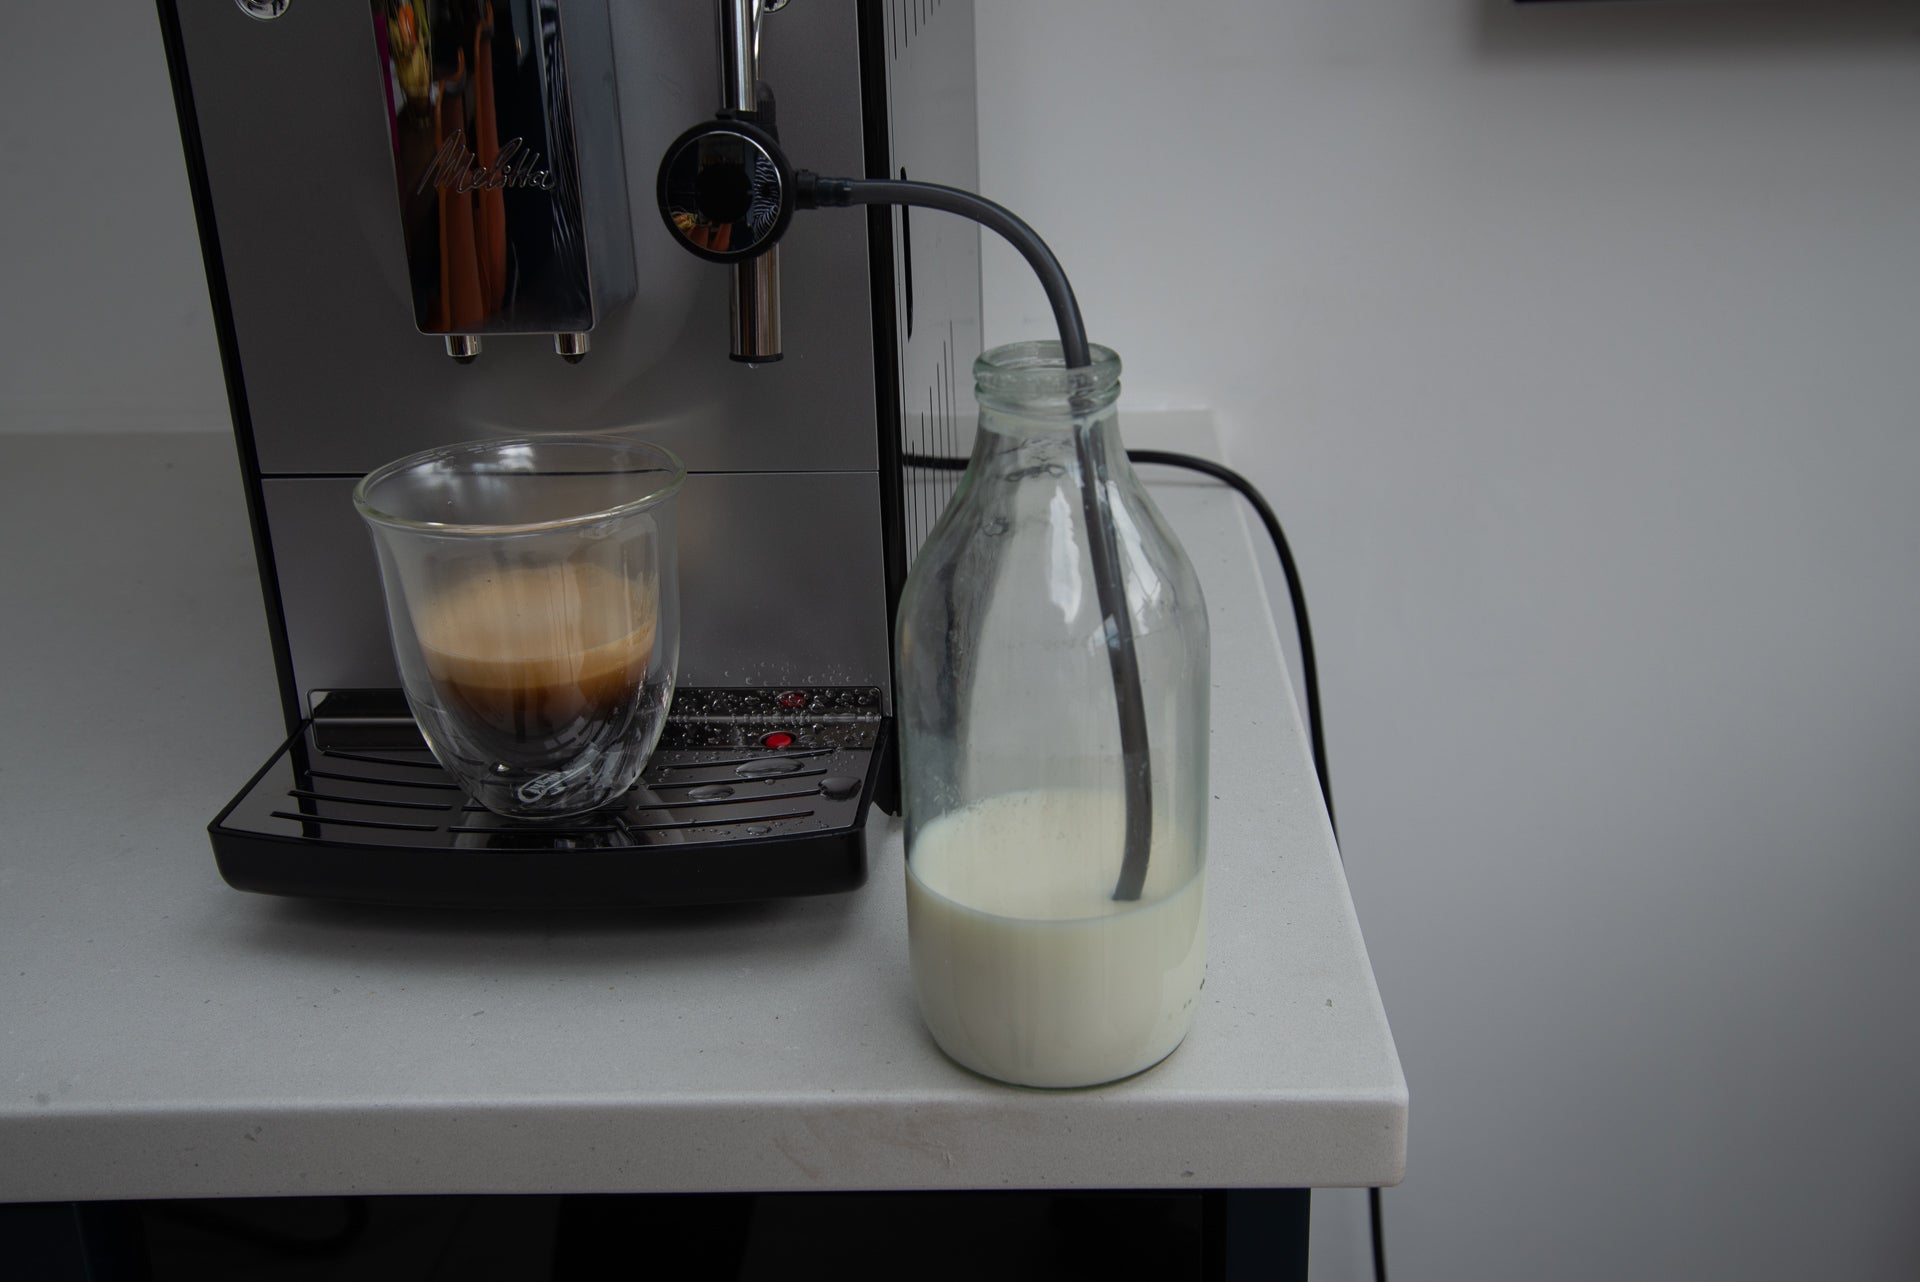 Melitta Caffeo Solo & Perfect Milk milk